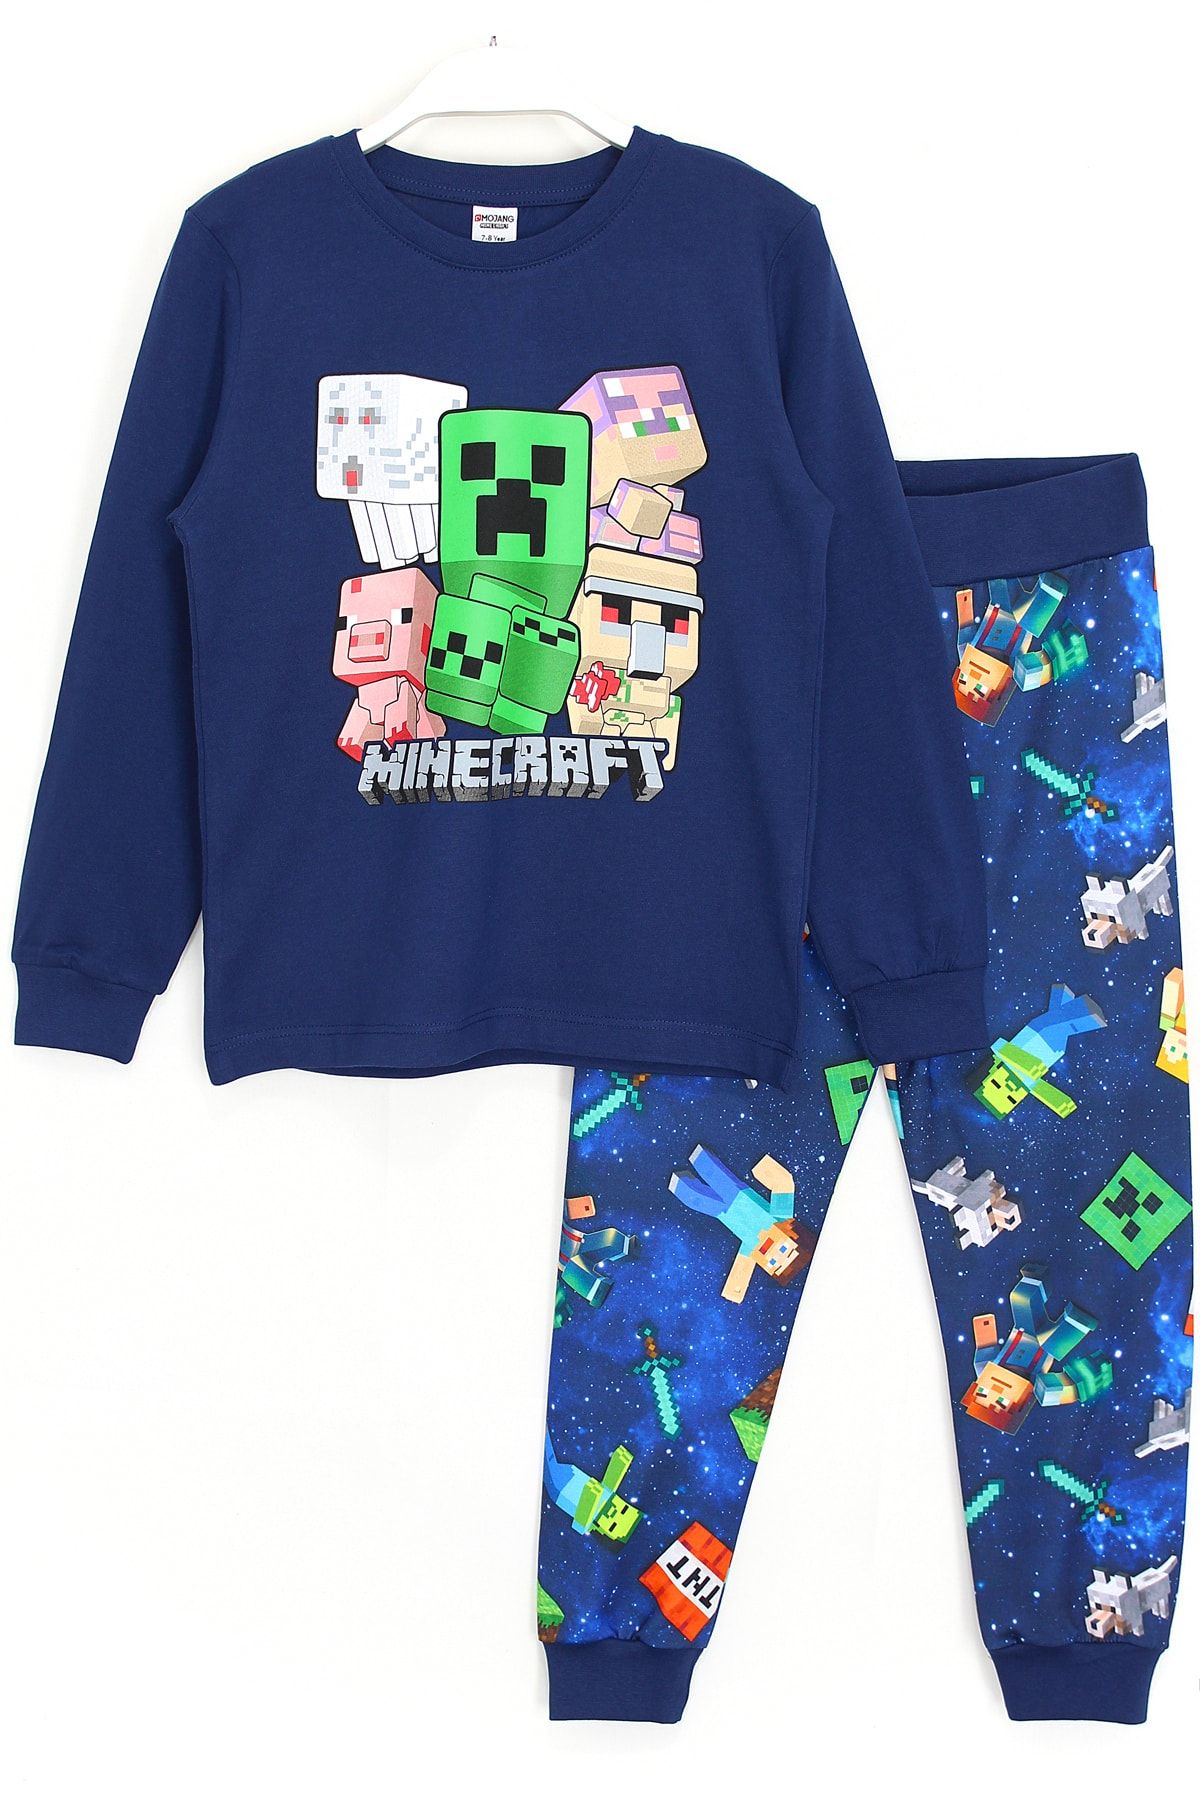 DobaKids Minecraft 3D Baskılı Erkek Çocuk Alt Üst Pijama Takımı Lacivert